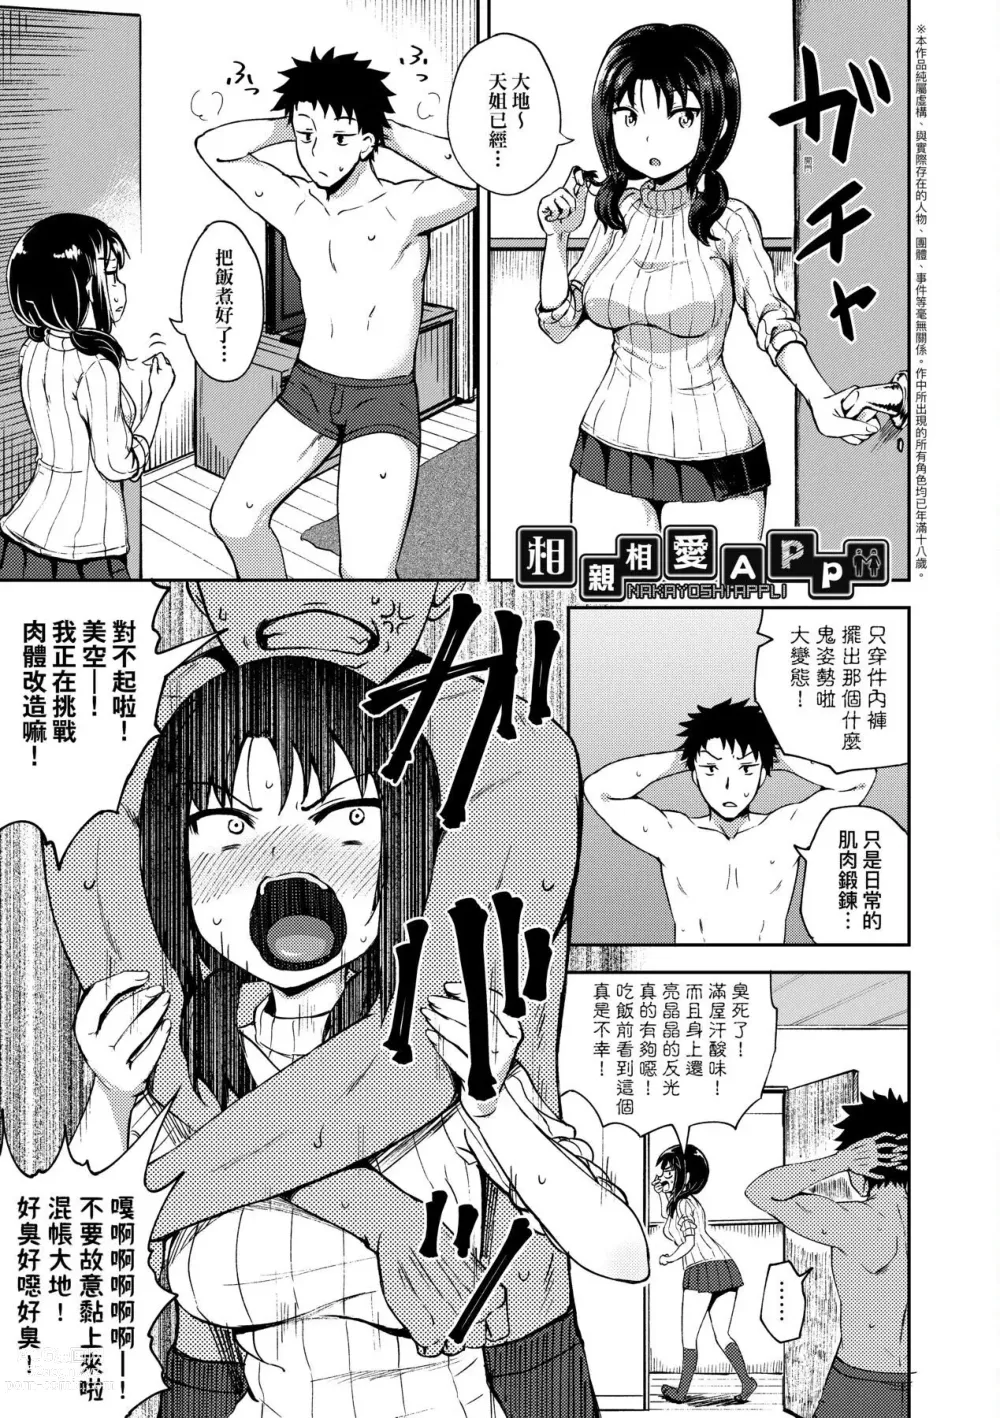 Page 7 of manga 心生遐想催眠暗示APP♡妳與我與她 (decensored)